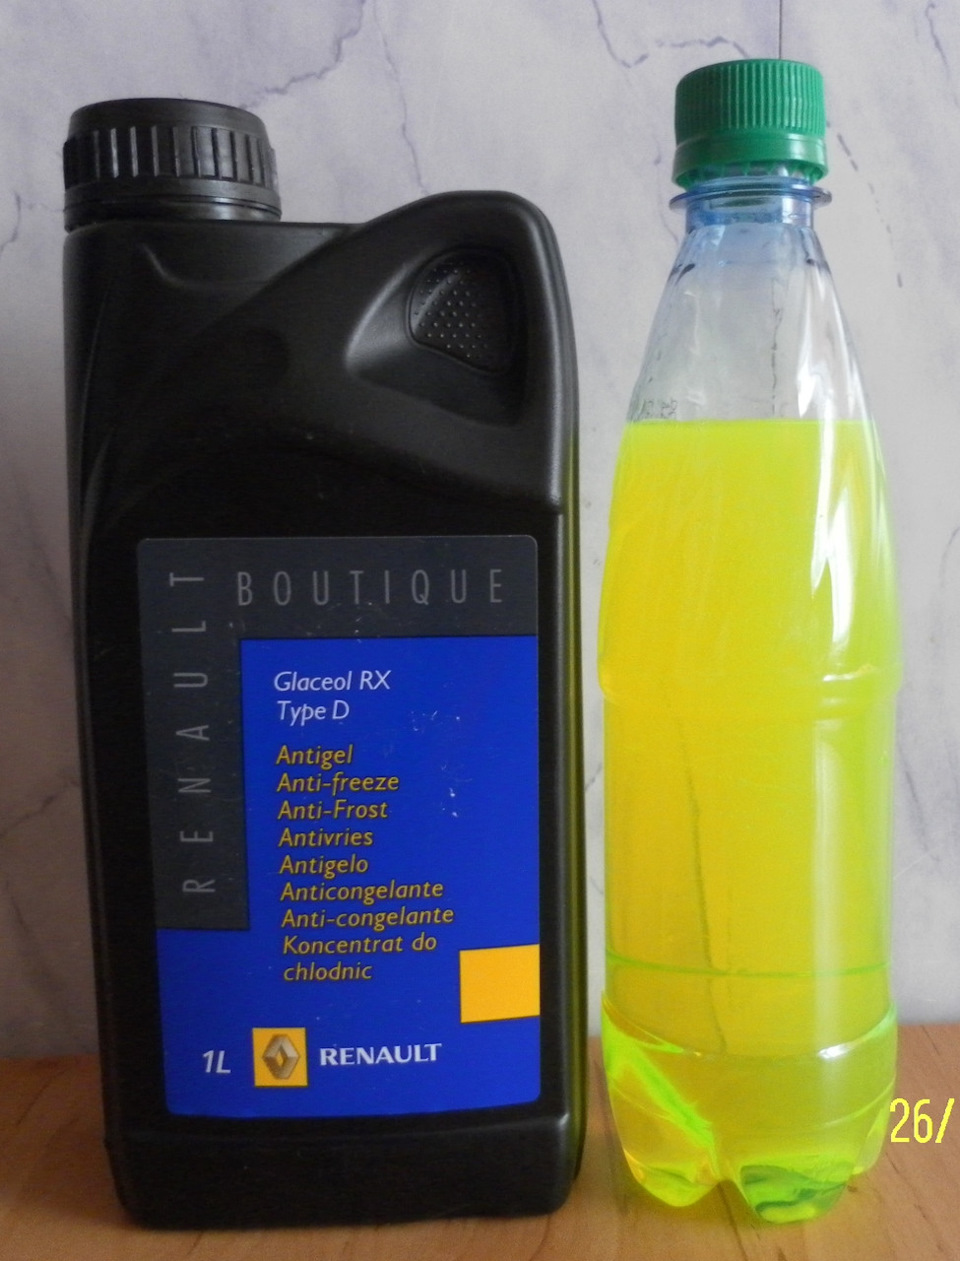 Оригинальный антифриз glaceol rx type d: химический состав жидкости и область применения, критерии выбора